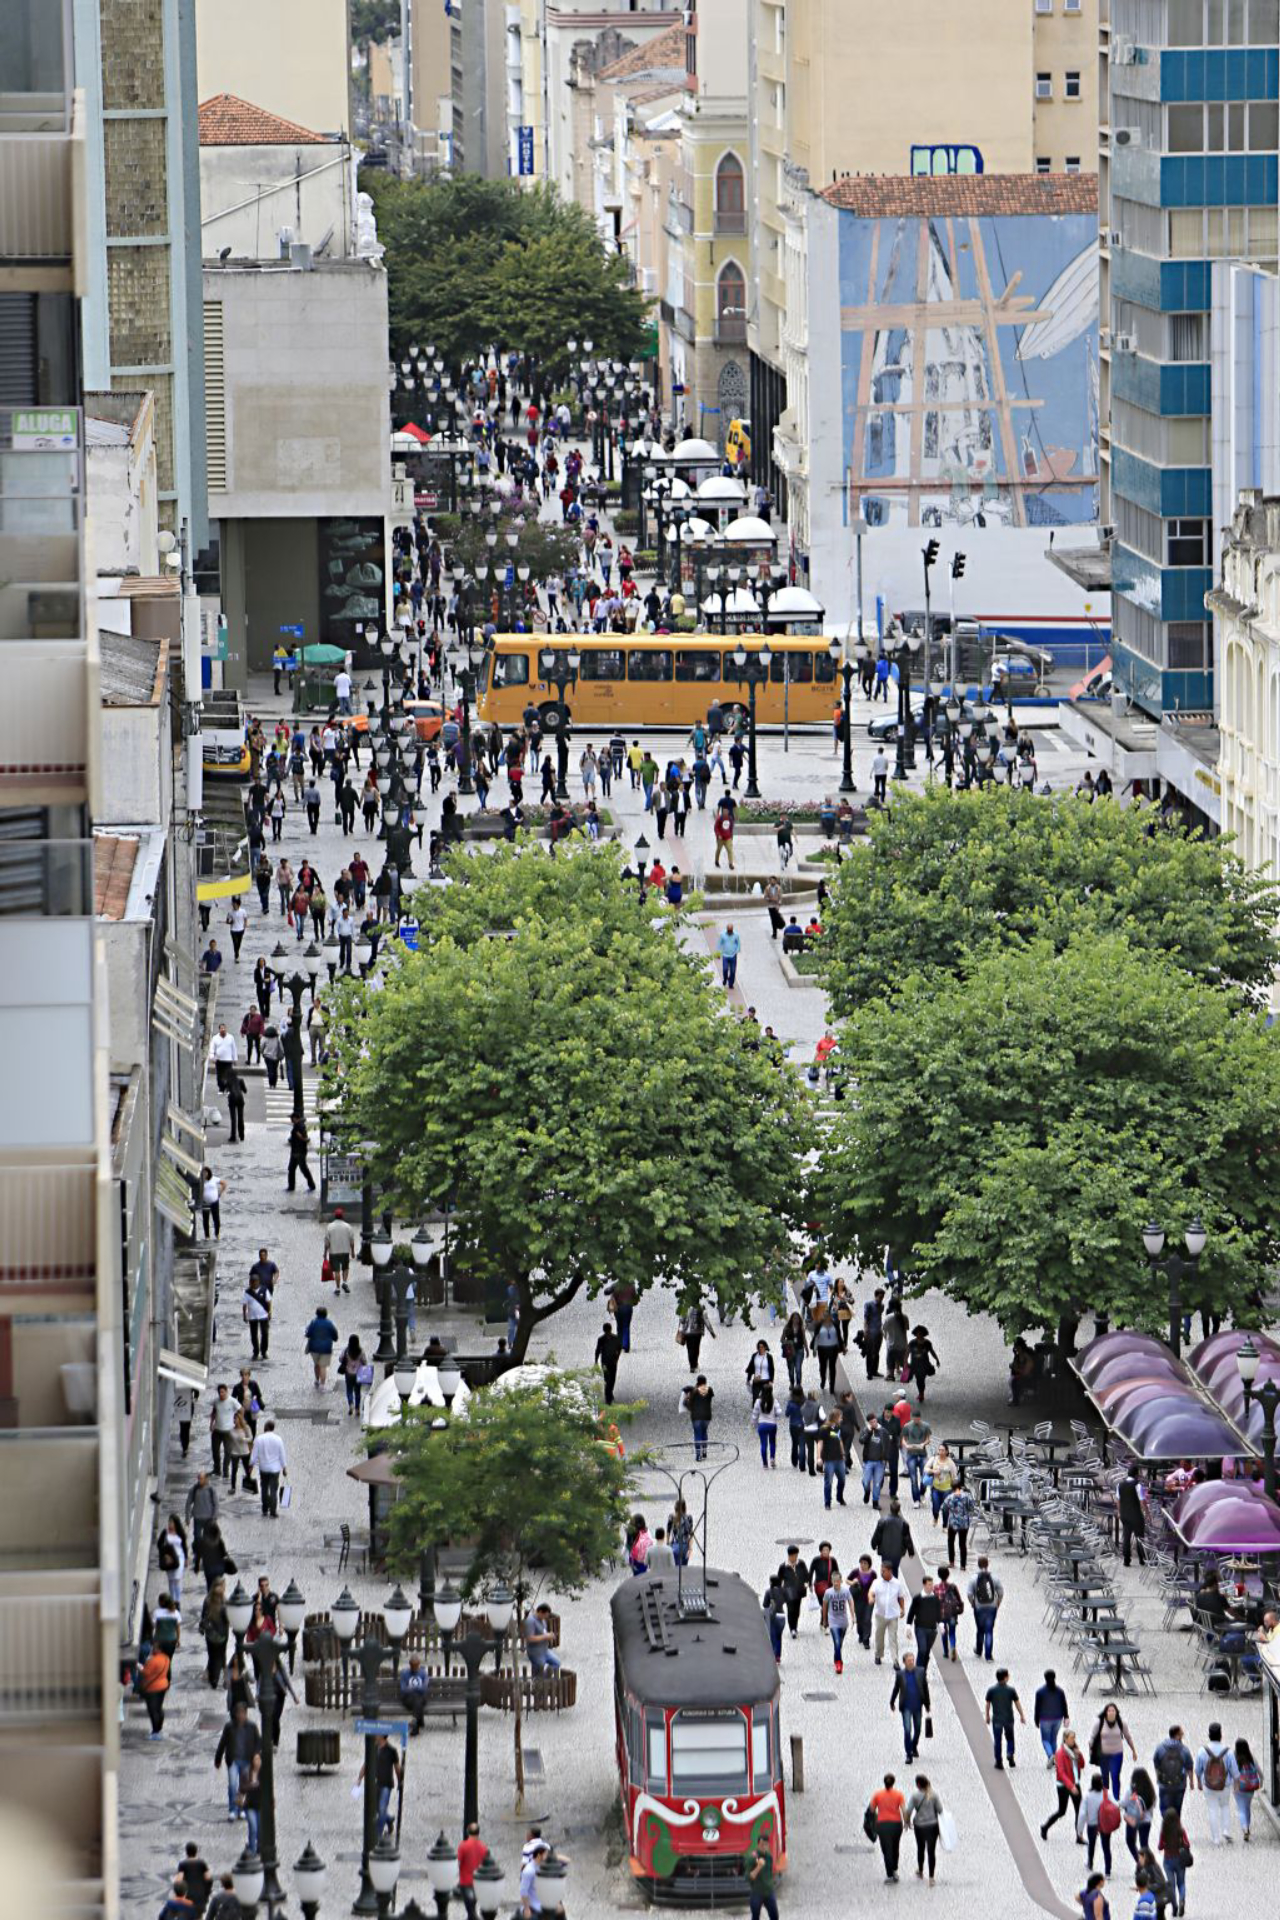 Movimento normal de pedestres na rua das flores. Foto: Albari Rosa/Gazeta do Povo